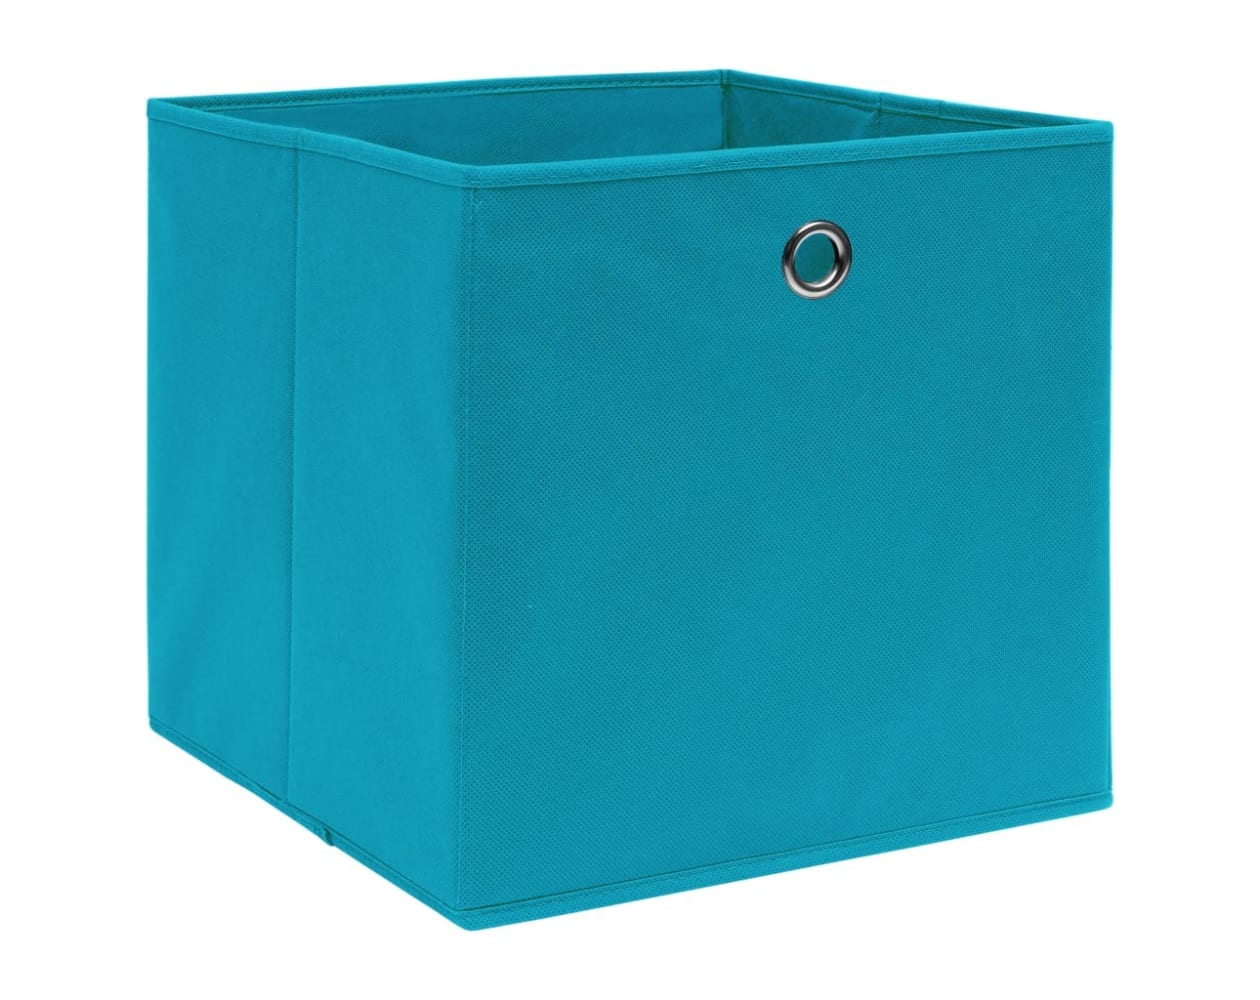 Cajas de almacenaje 10 uds tela no tejido 28x28x28 cm azul bebé